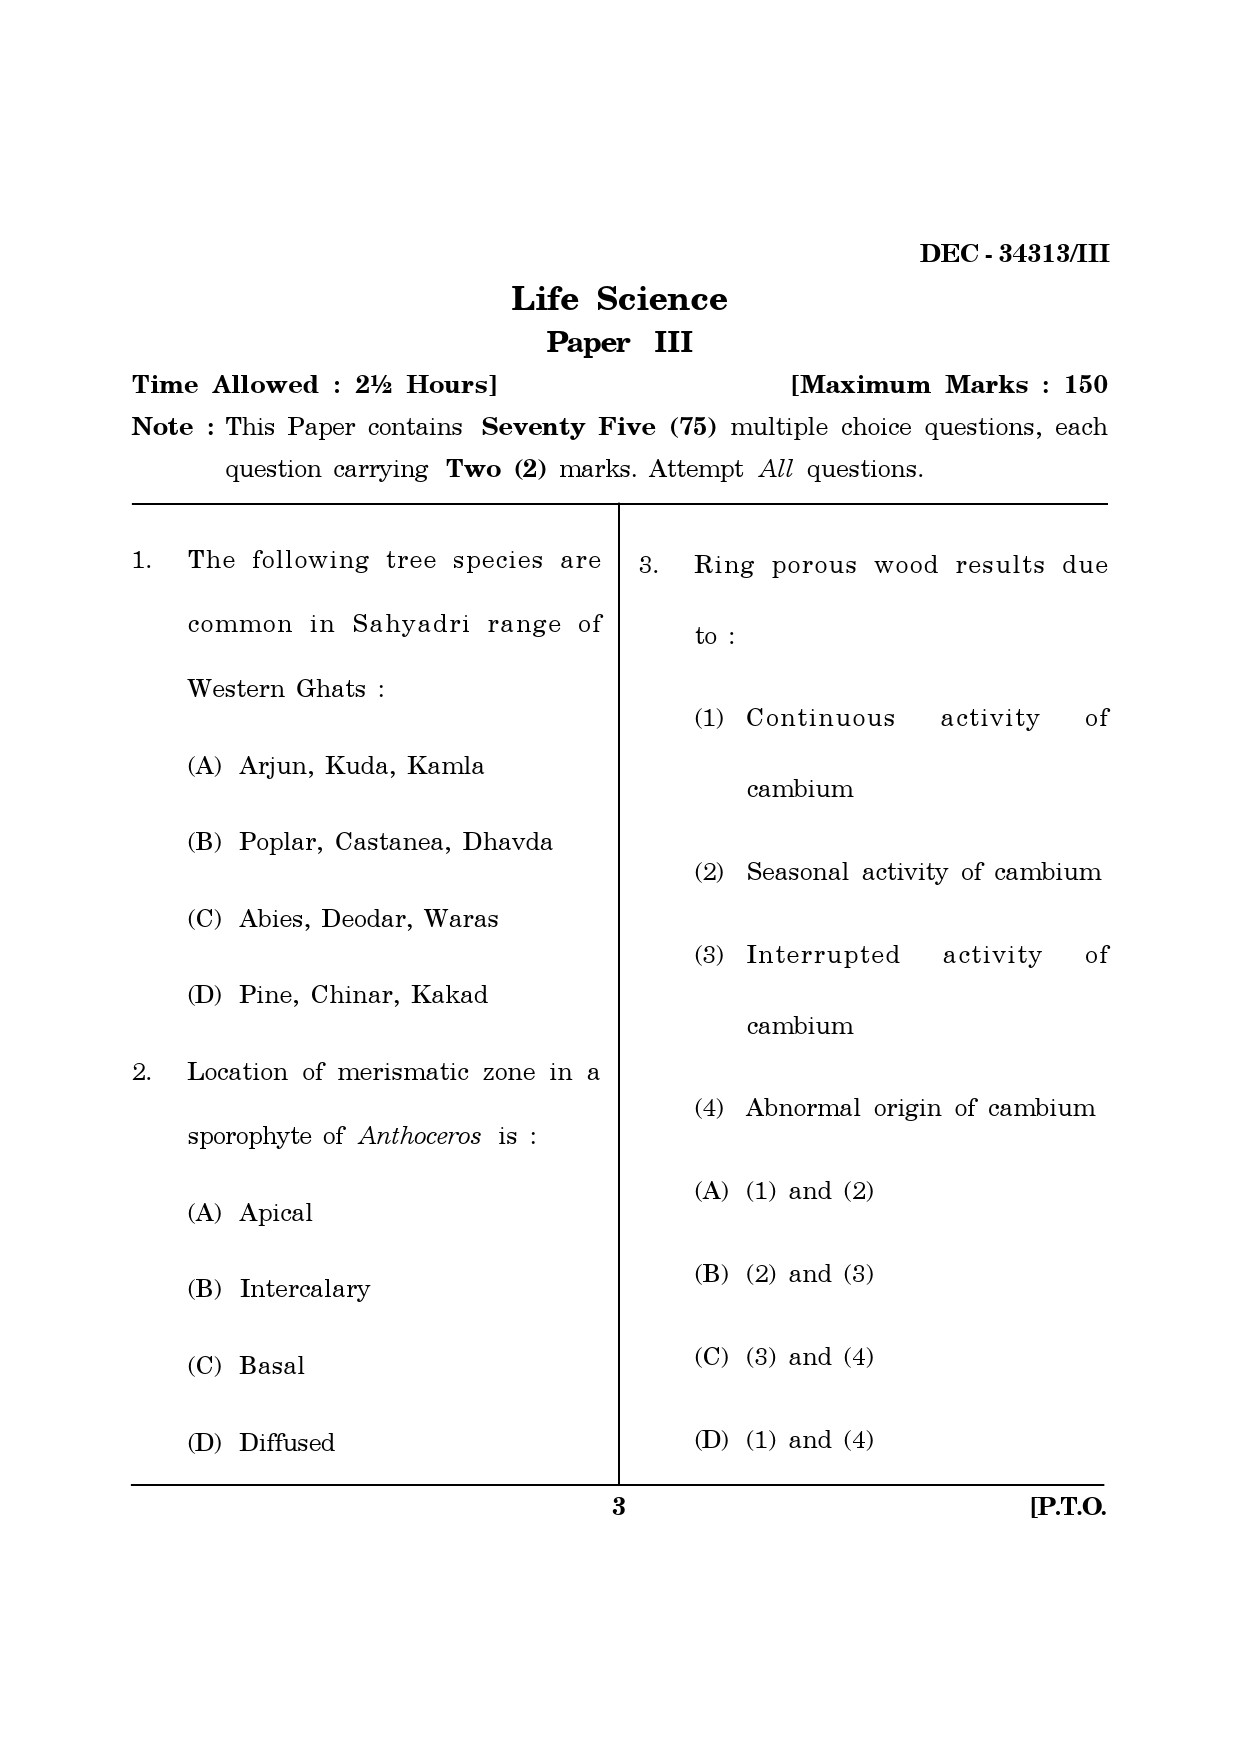 Maharashtra SET Life Sciences Question Paper III December 2013 2